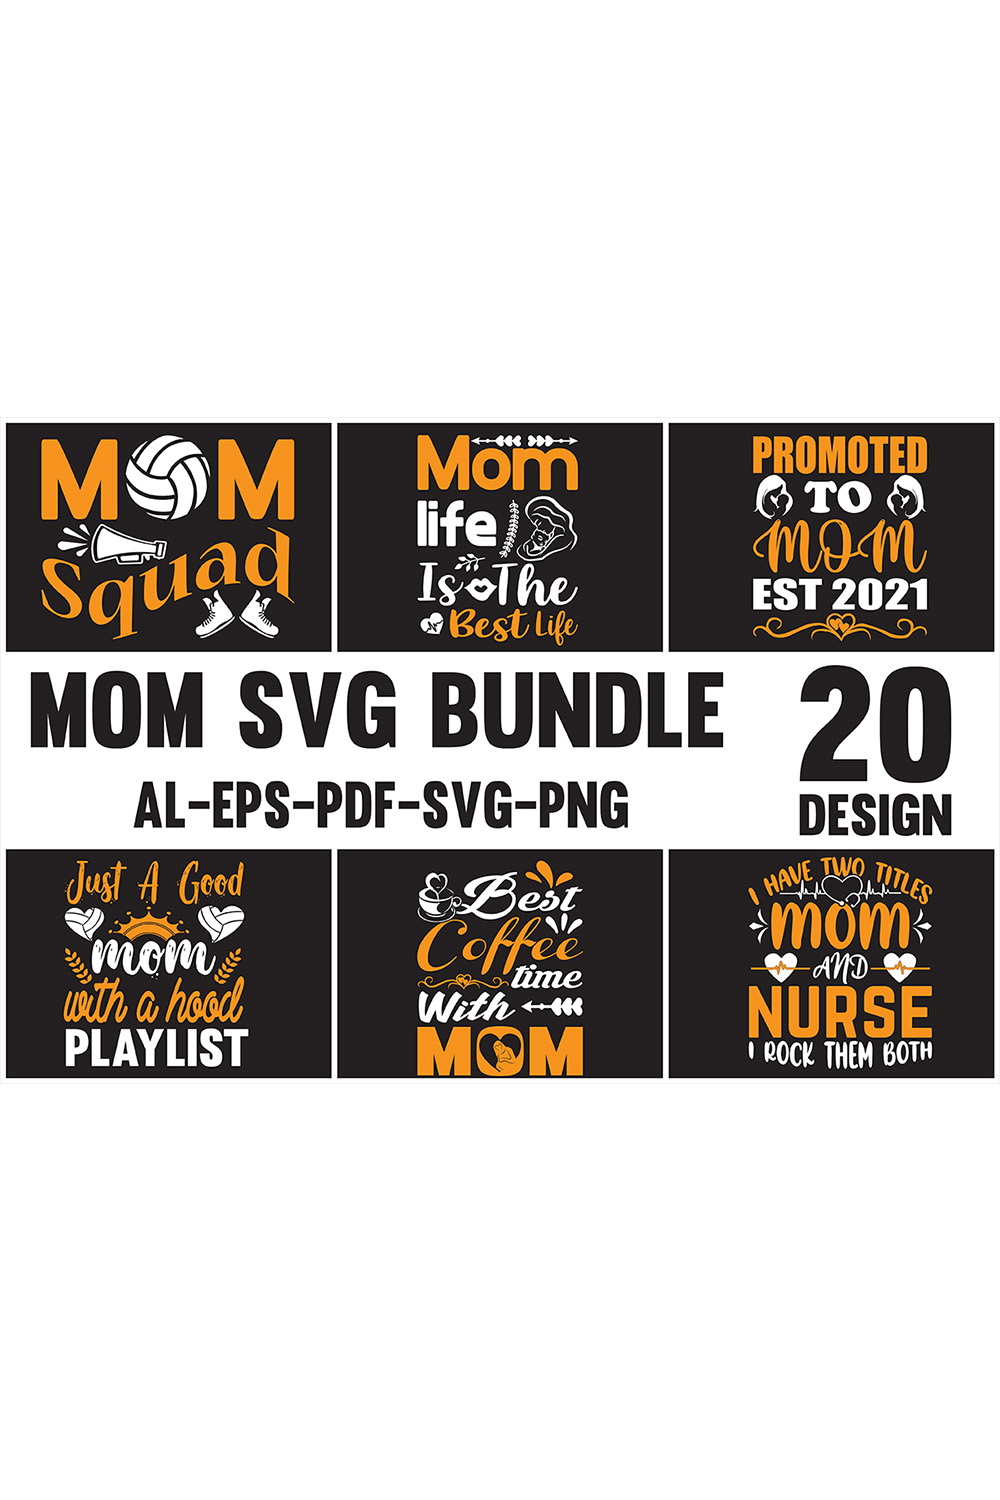 Mom SVG Design Bundle pinterest preview image.